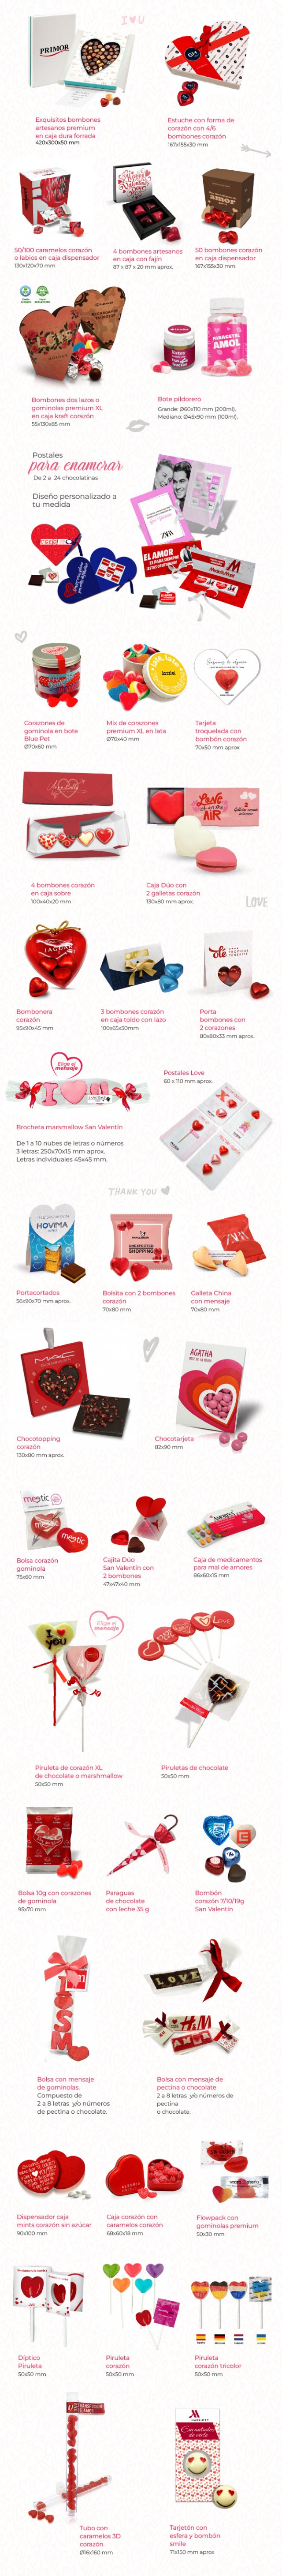 Celebra el amor con chocolates y caramelos en San Valentín